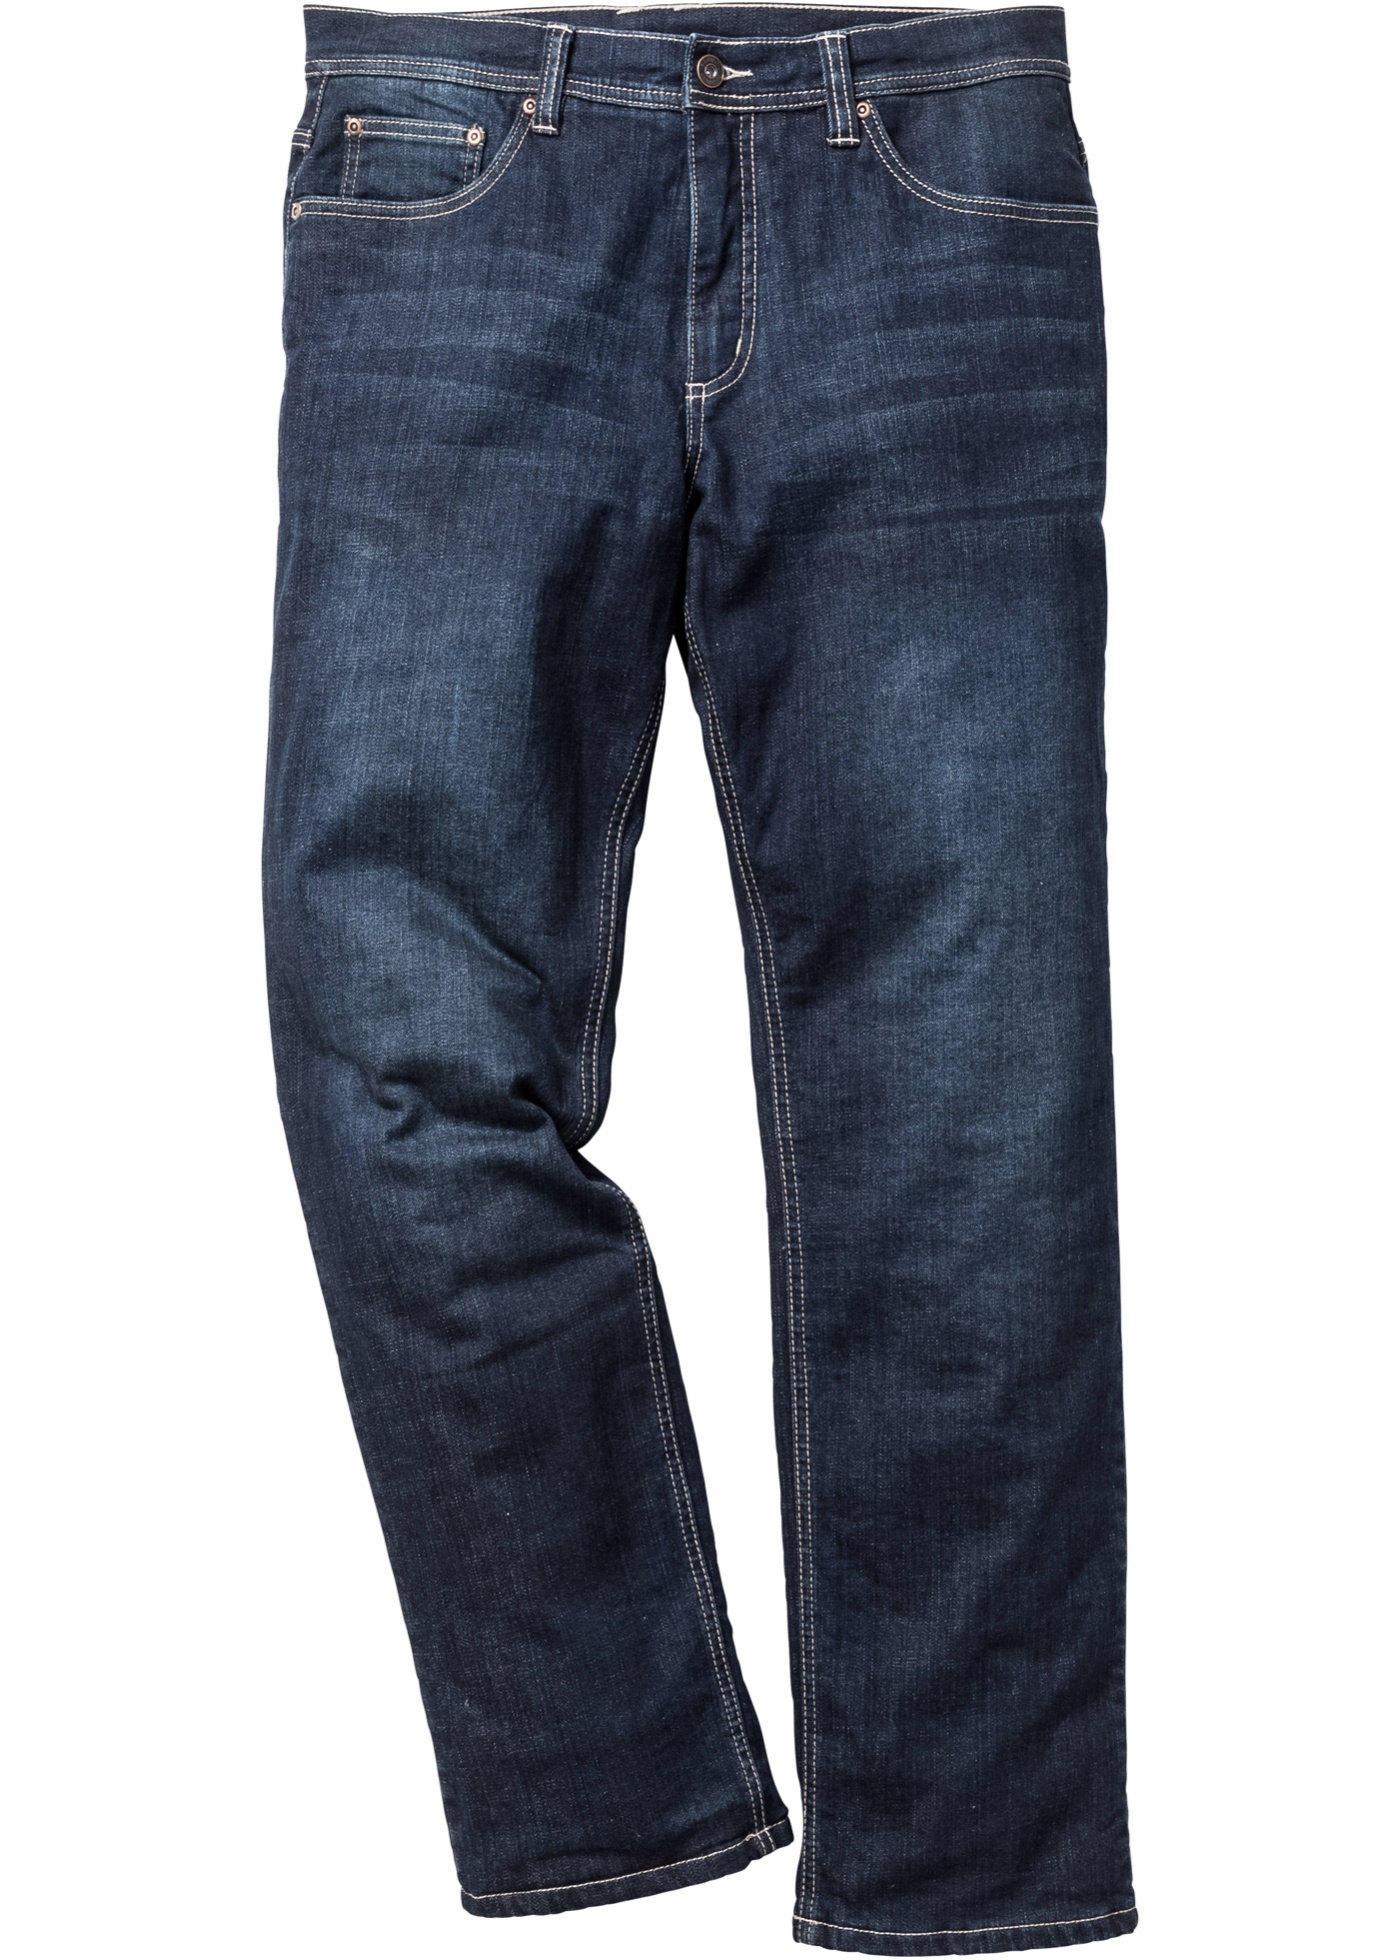 Fodrade jeans, längd 32